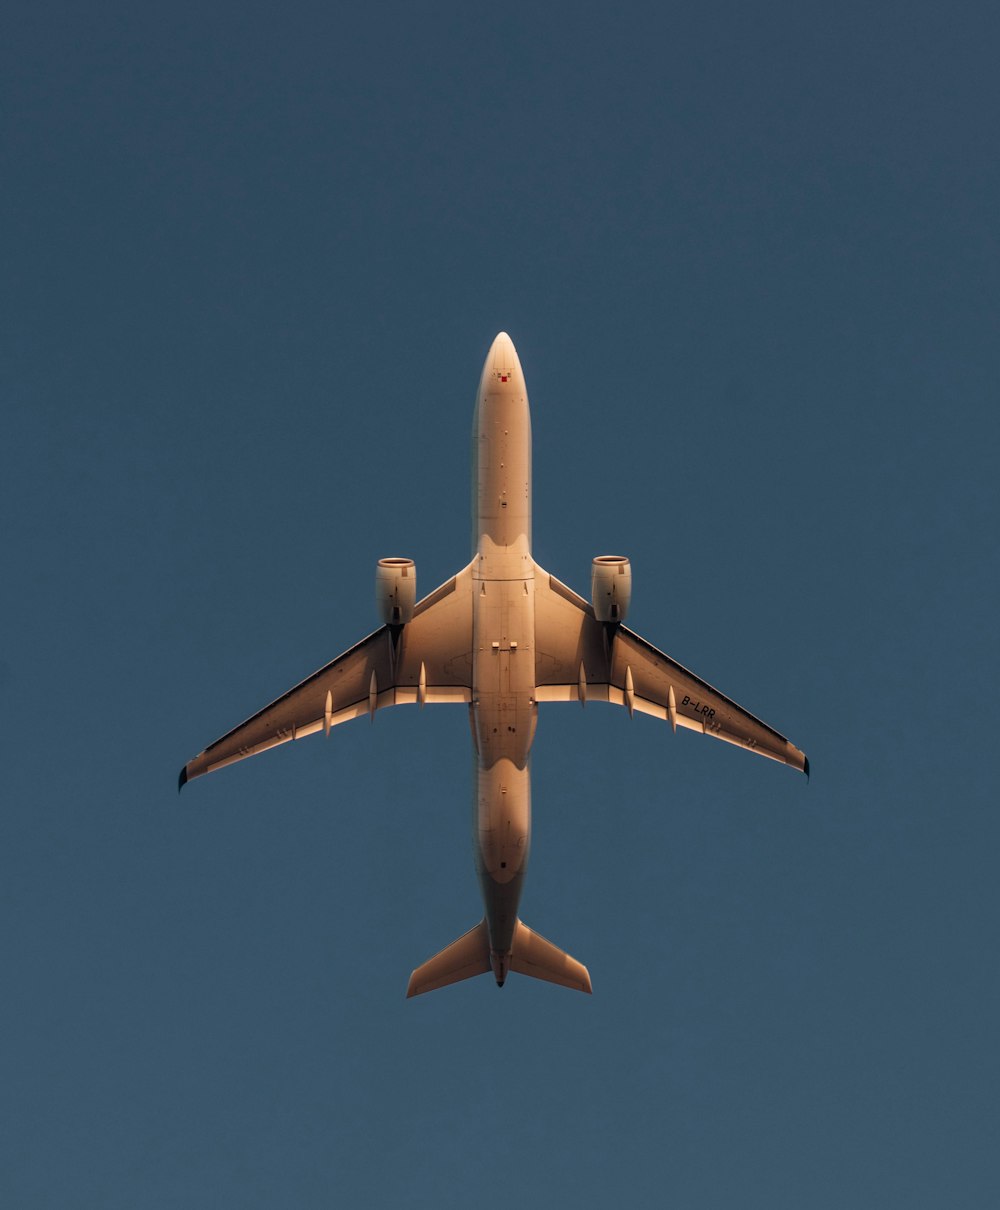 青空を飛ぶ大型ジェット旅客機